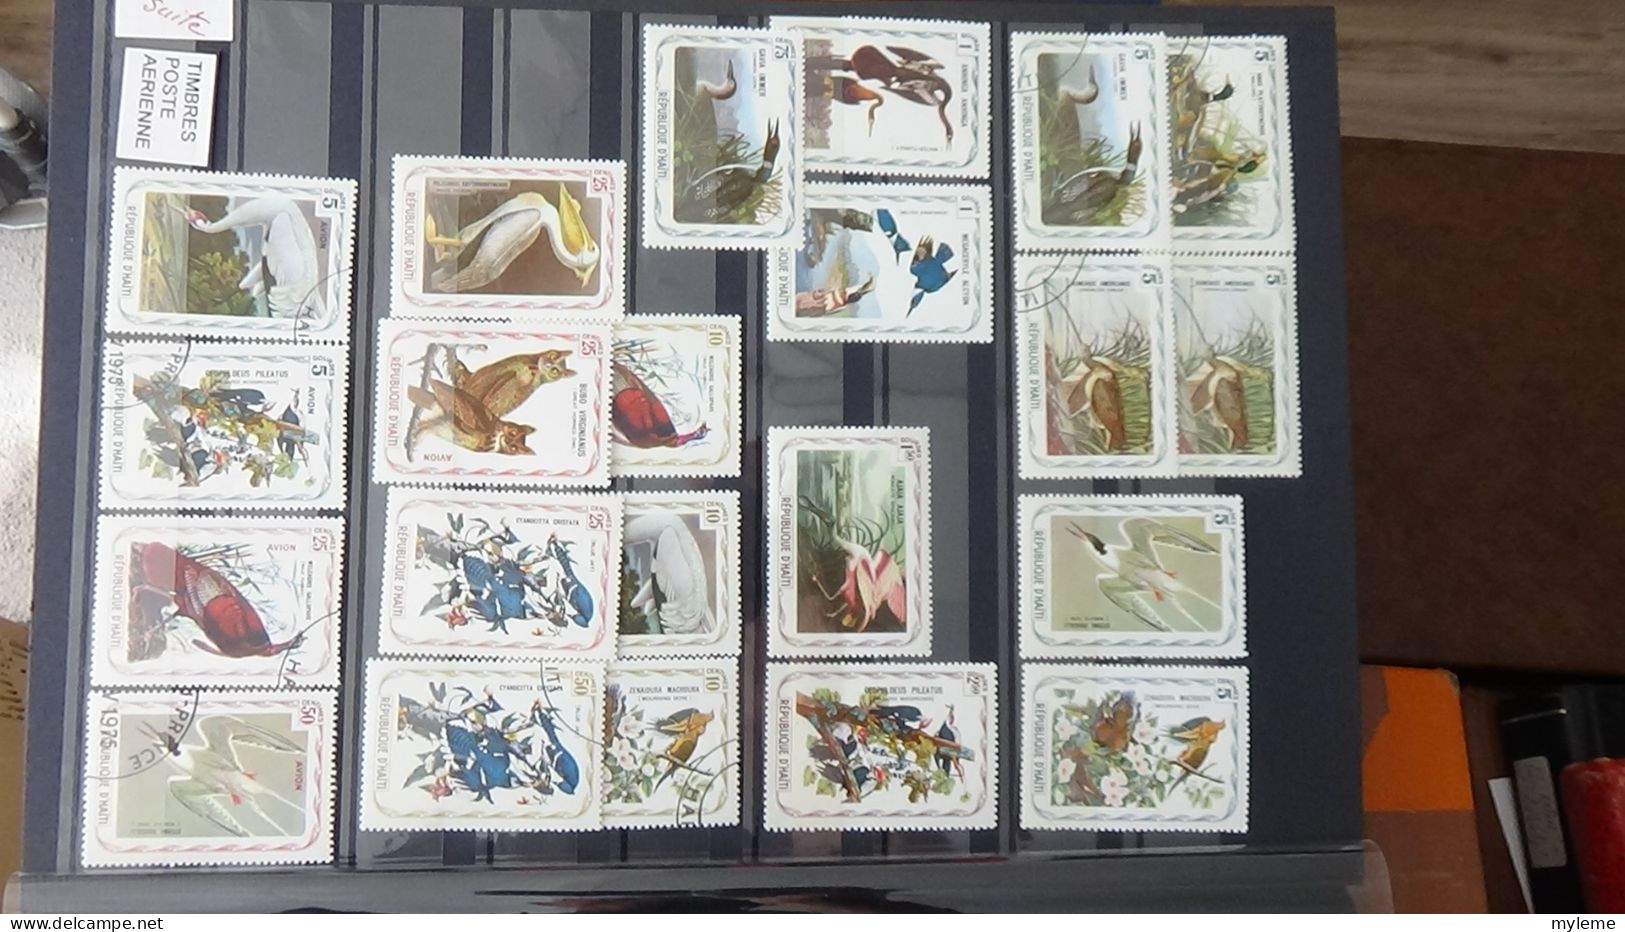 BF30 Ensemble de timbres de divers pays + Merson N° 122 **.(2 petites pites de rouille au dos) Cote 3200 euros